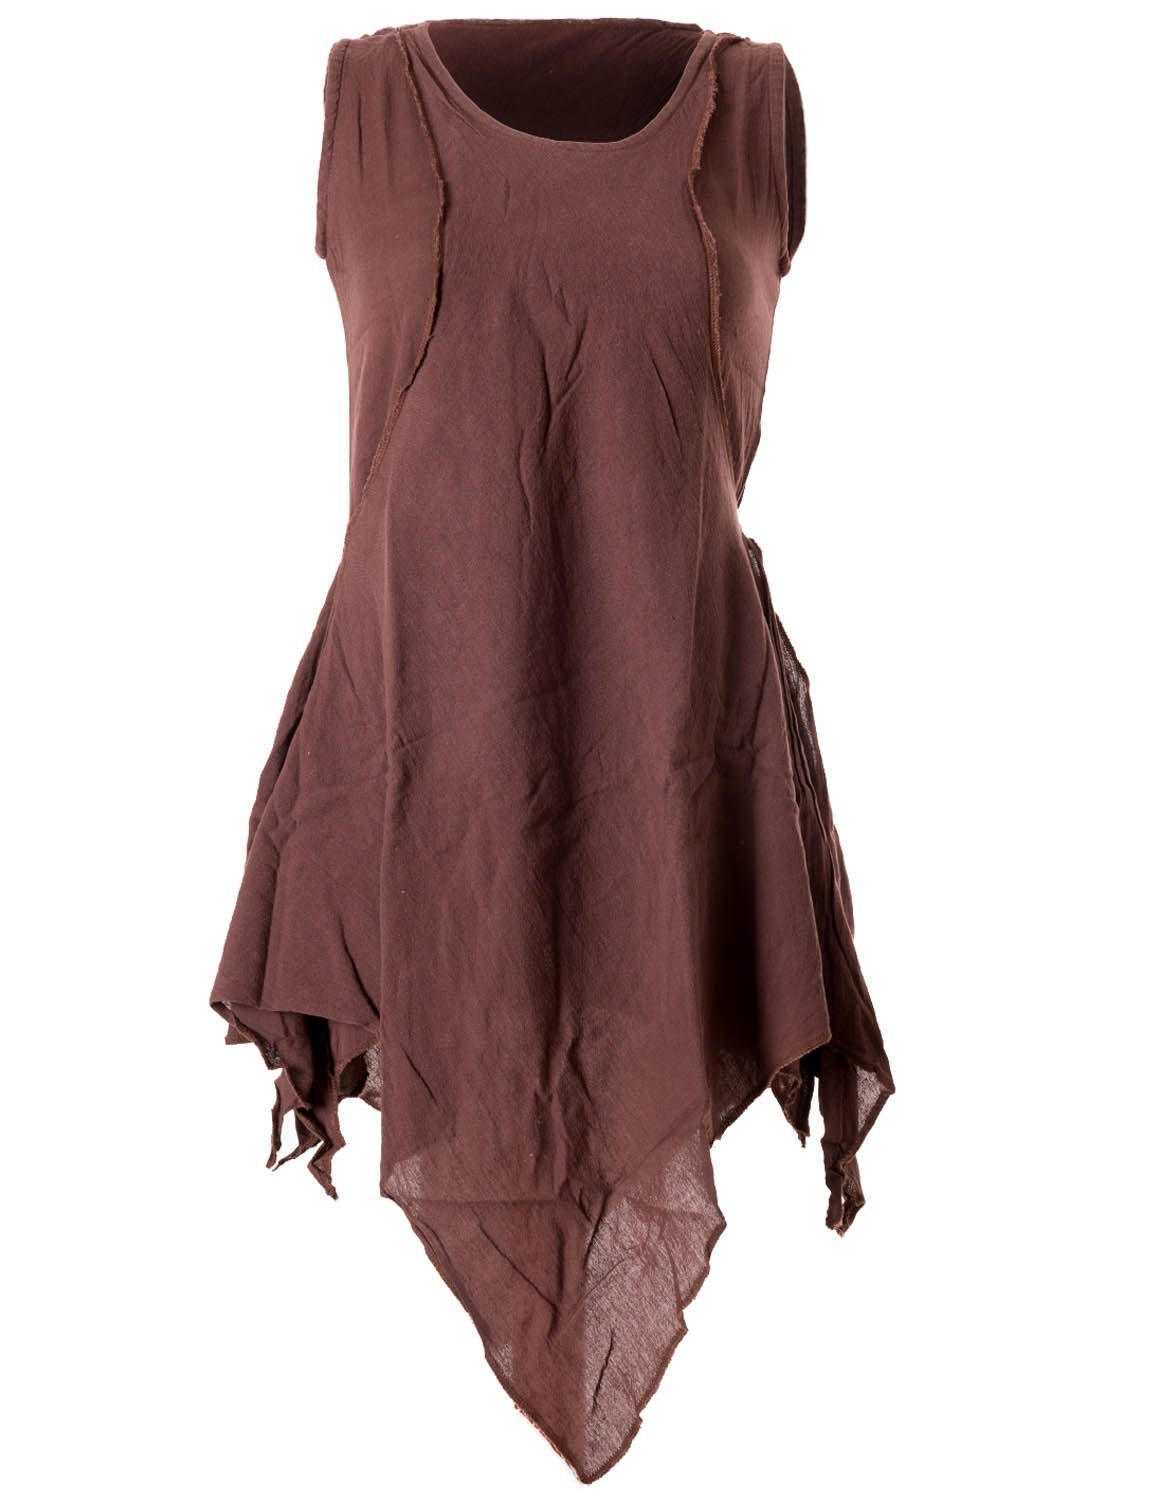 Vishes Tunikakleid Zipfeliges Lagenlook Shirt Goa Elfen, im Ethno, Tunika Used-Look Hippie, Style braun